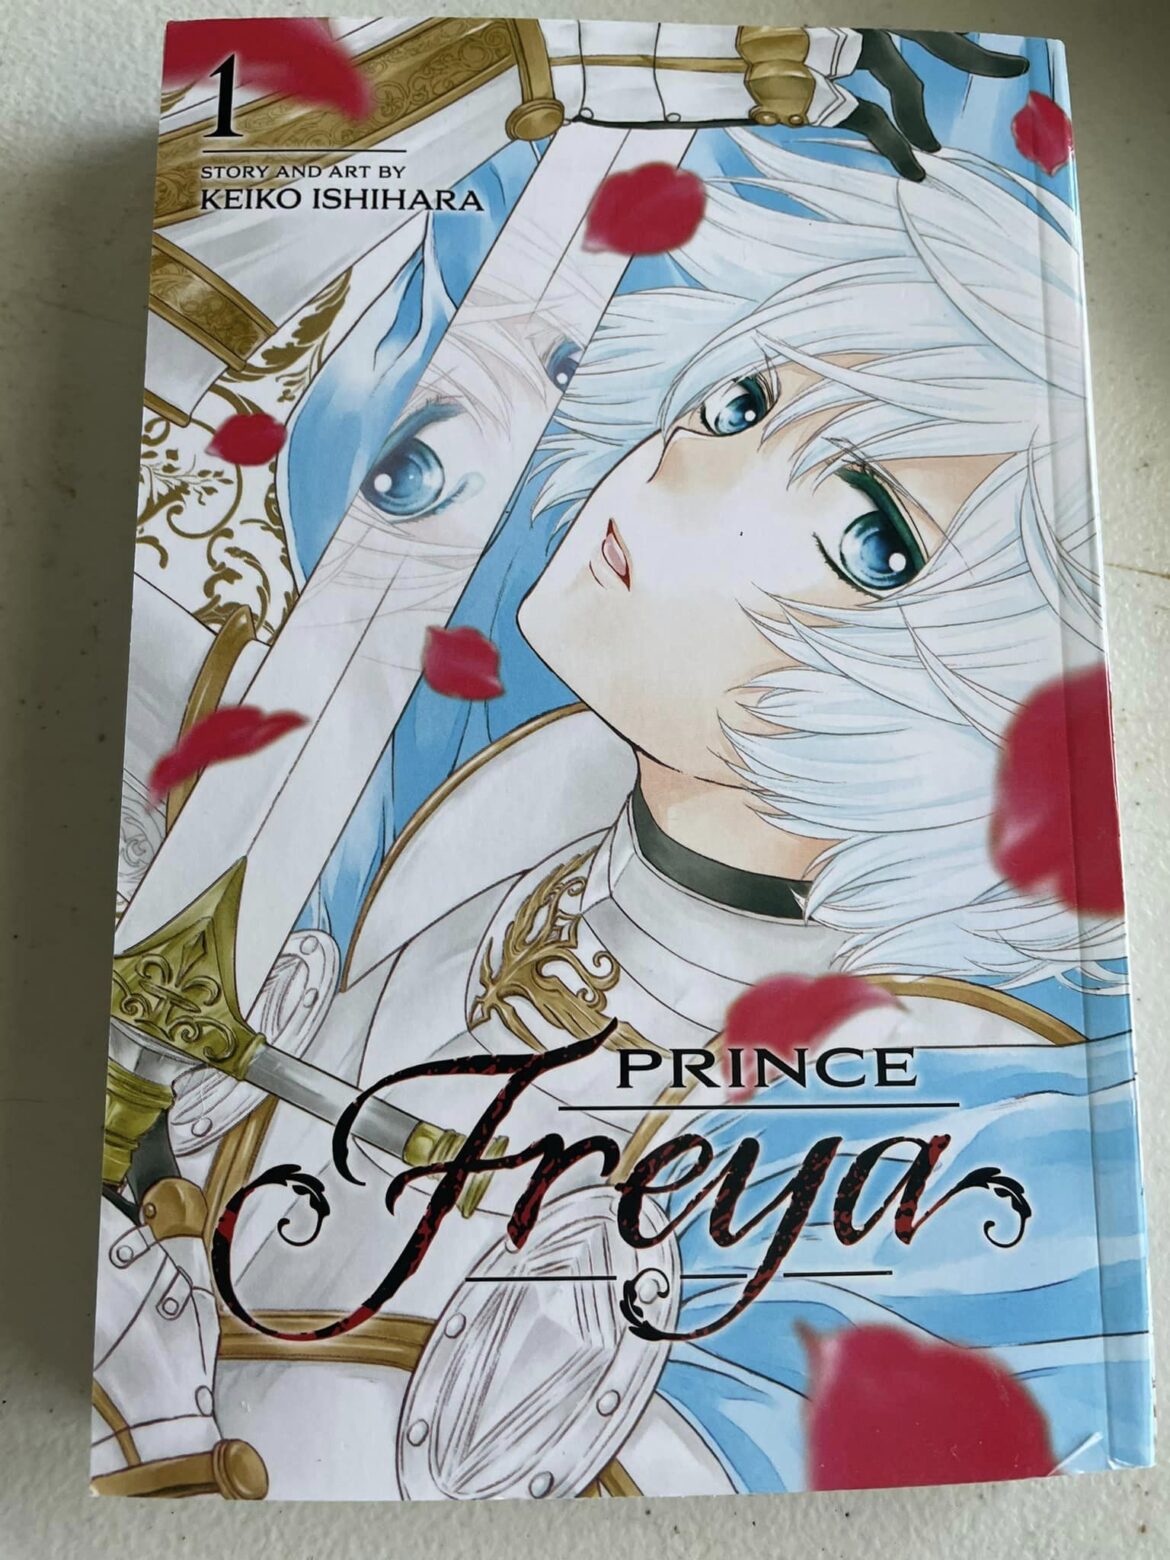 Morgan’s Monthly Manga Musing #5: “Prince Freya:”